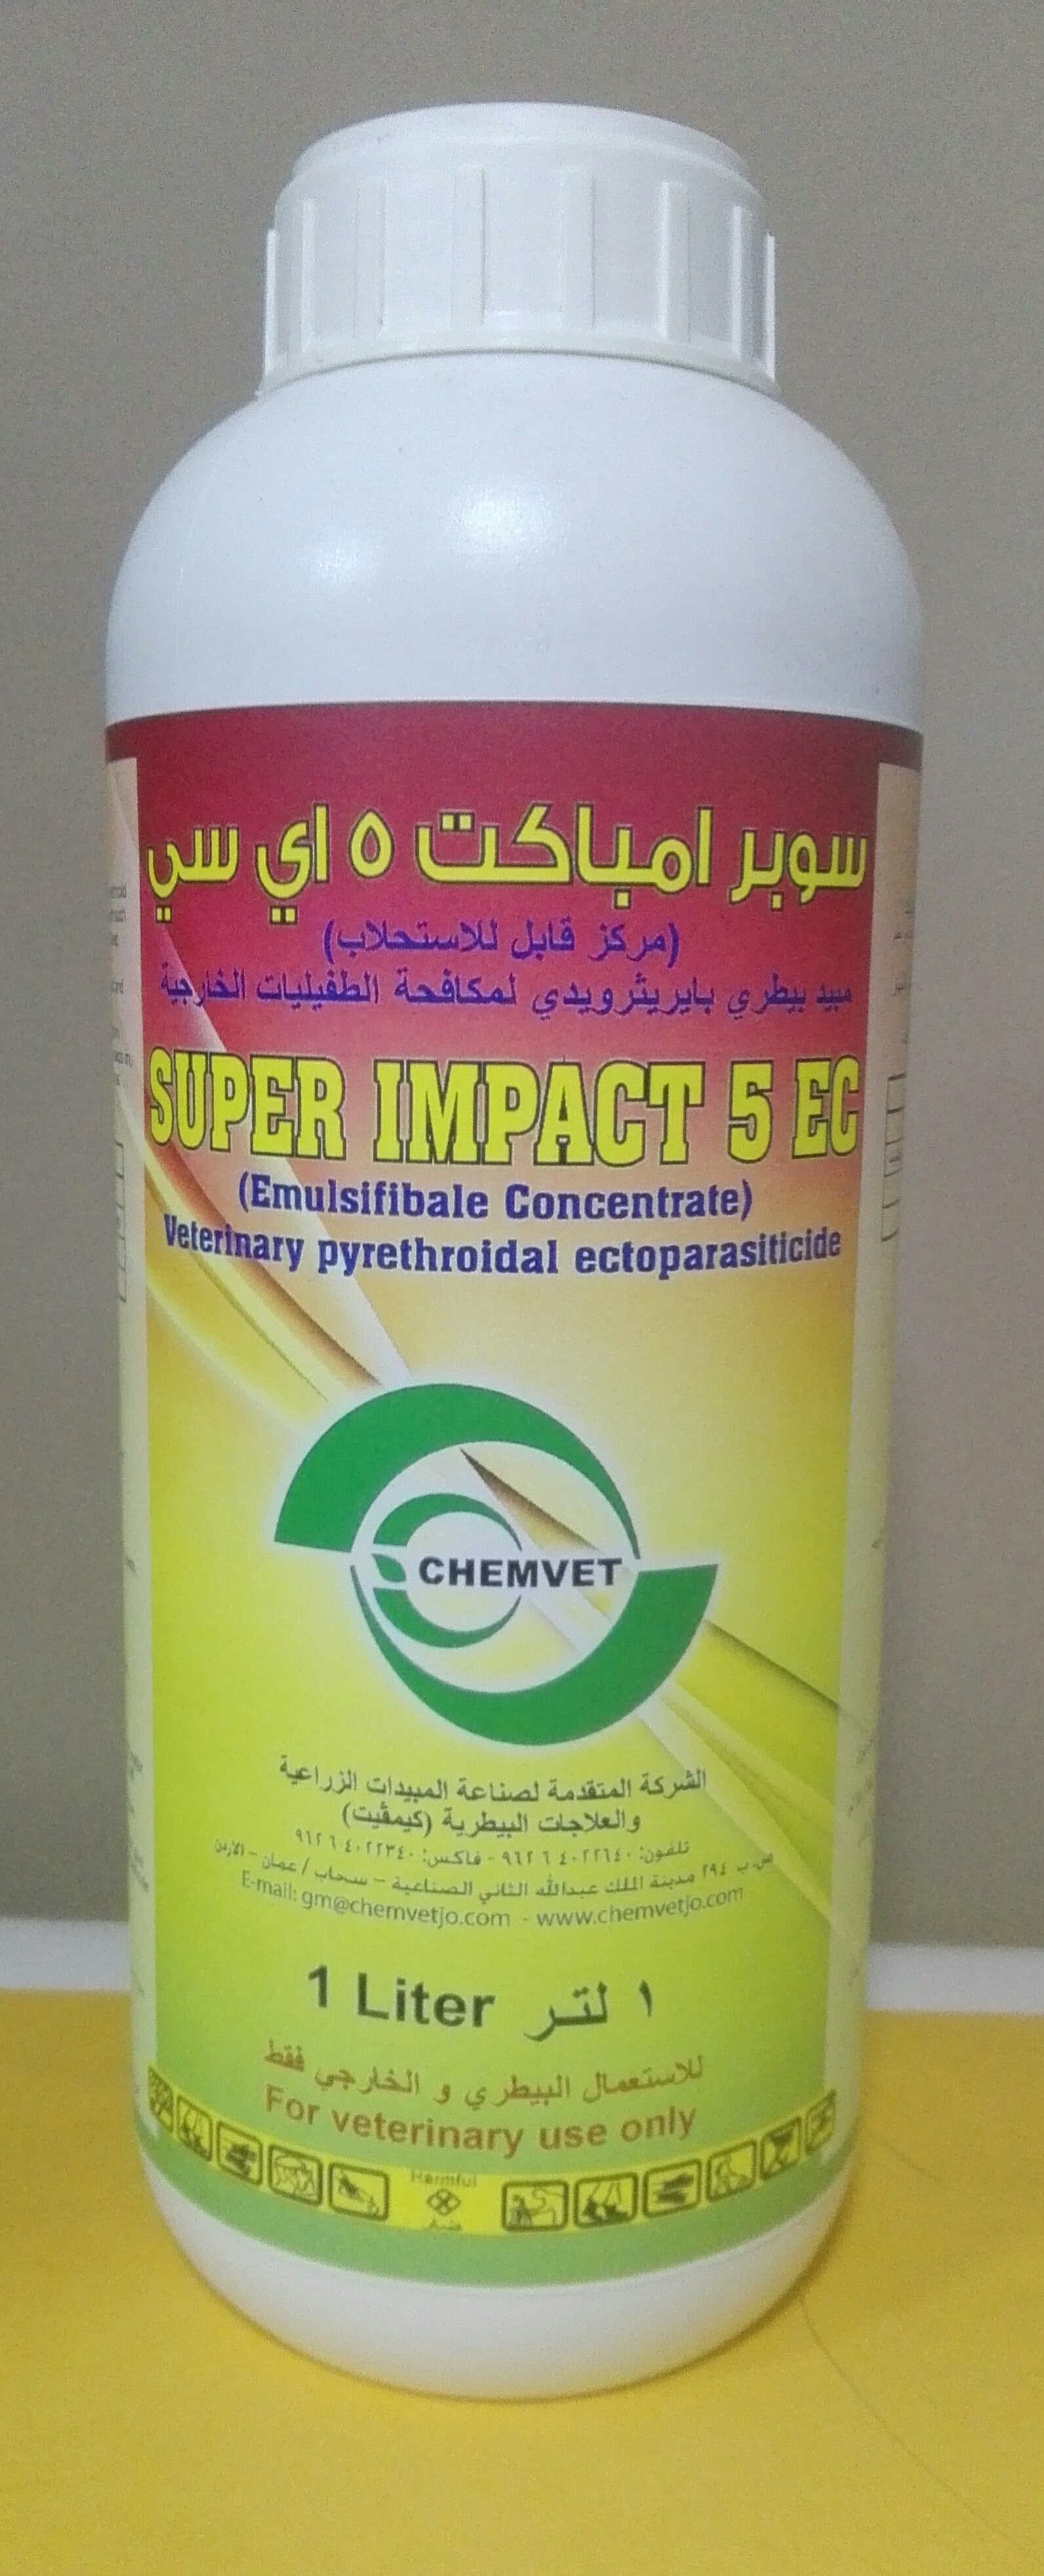 SUPER IMPACT 5 EC